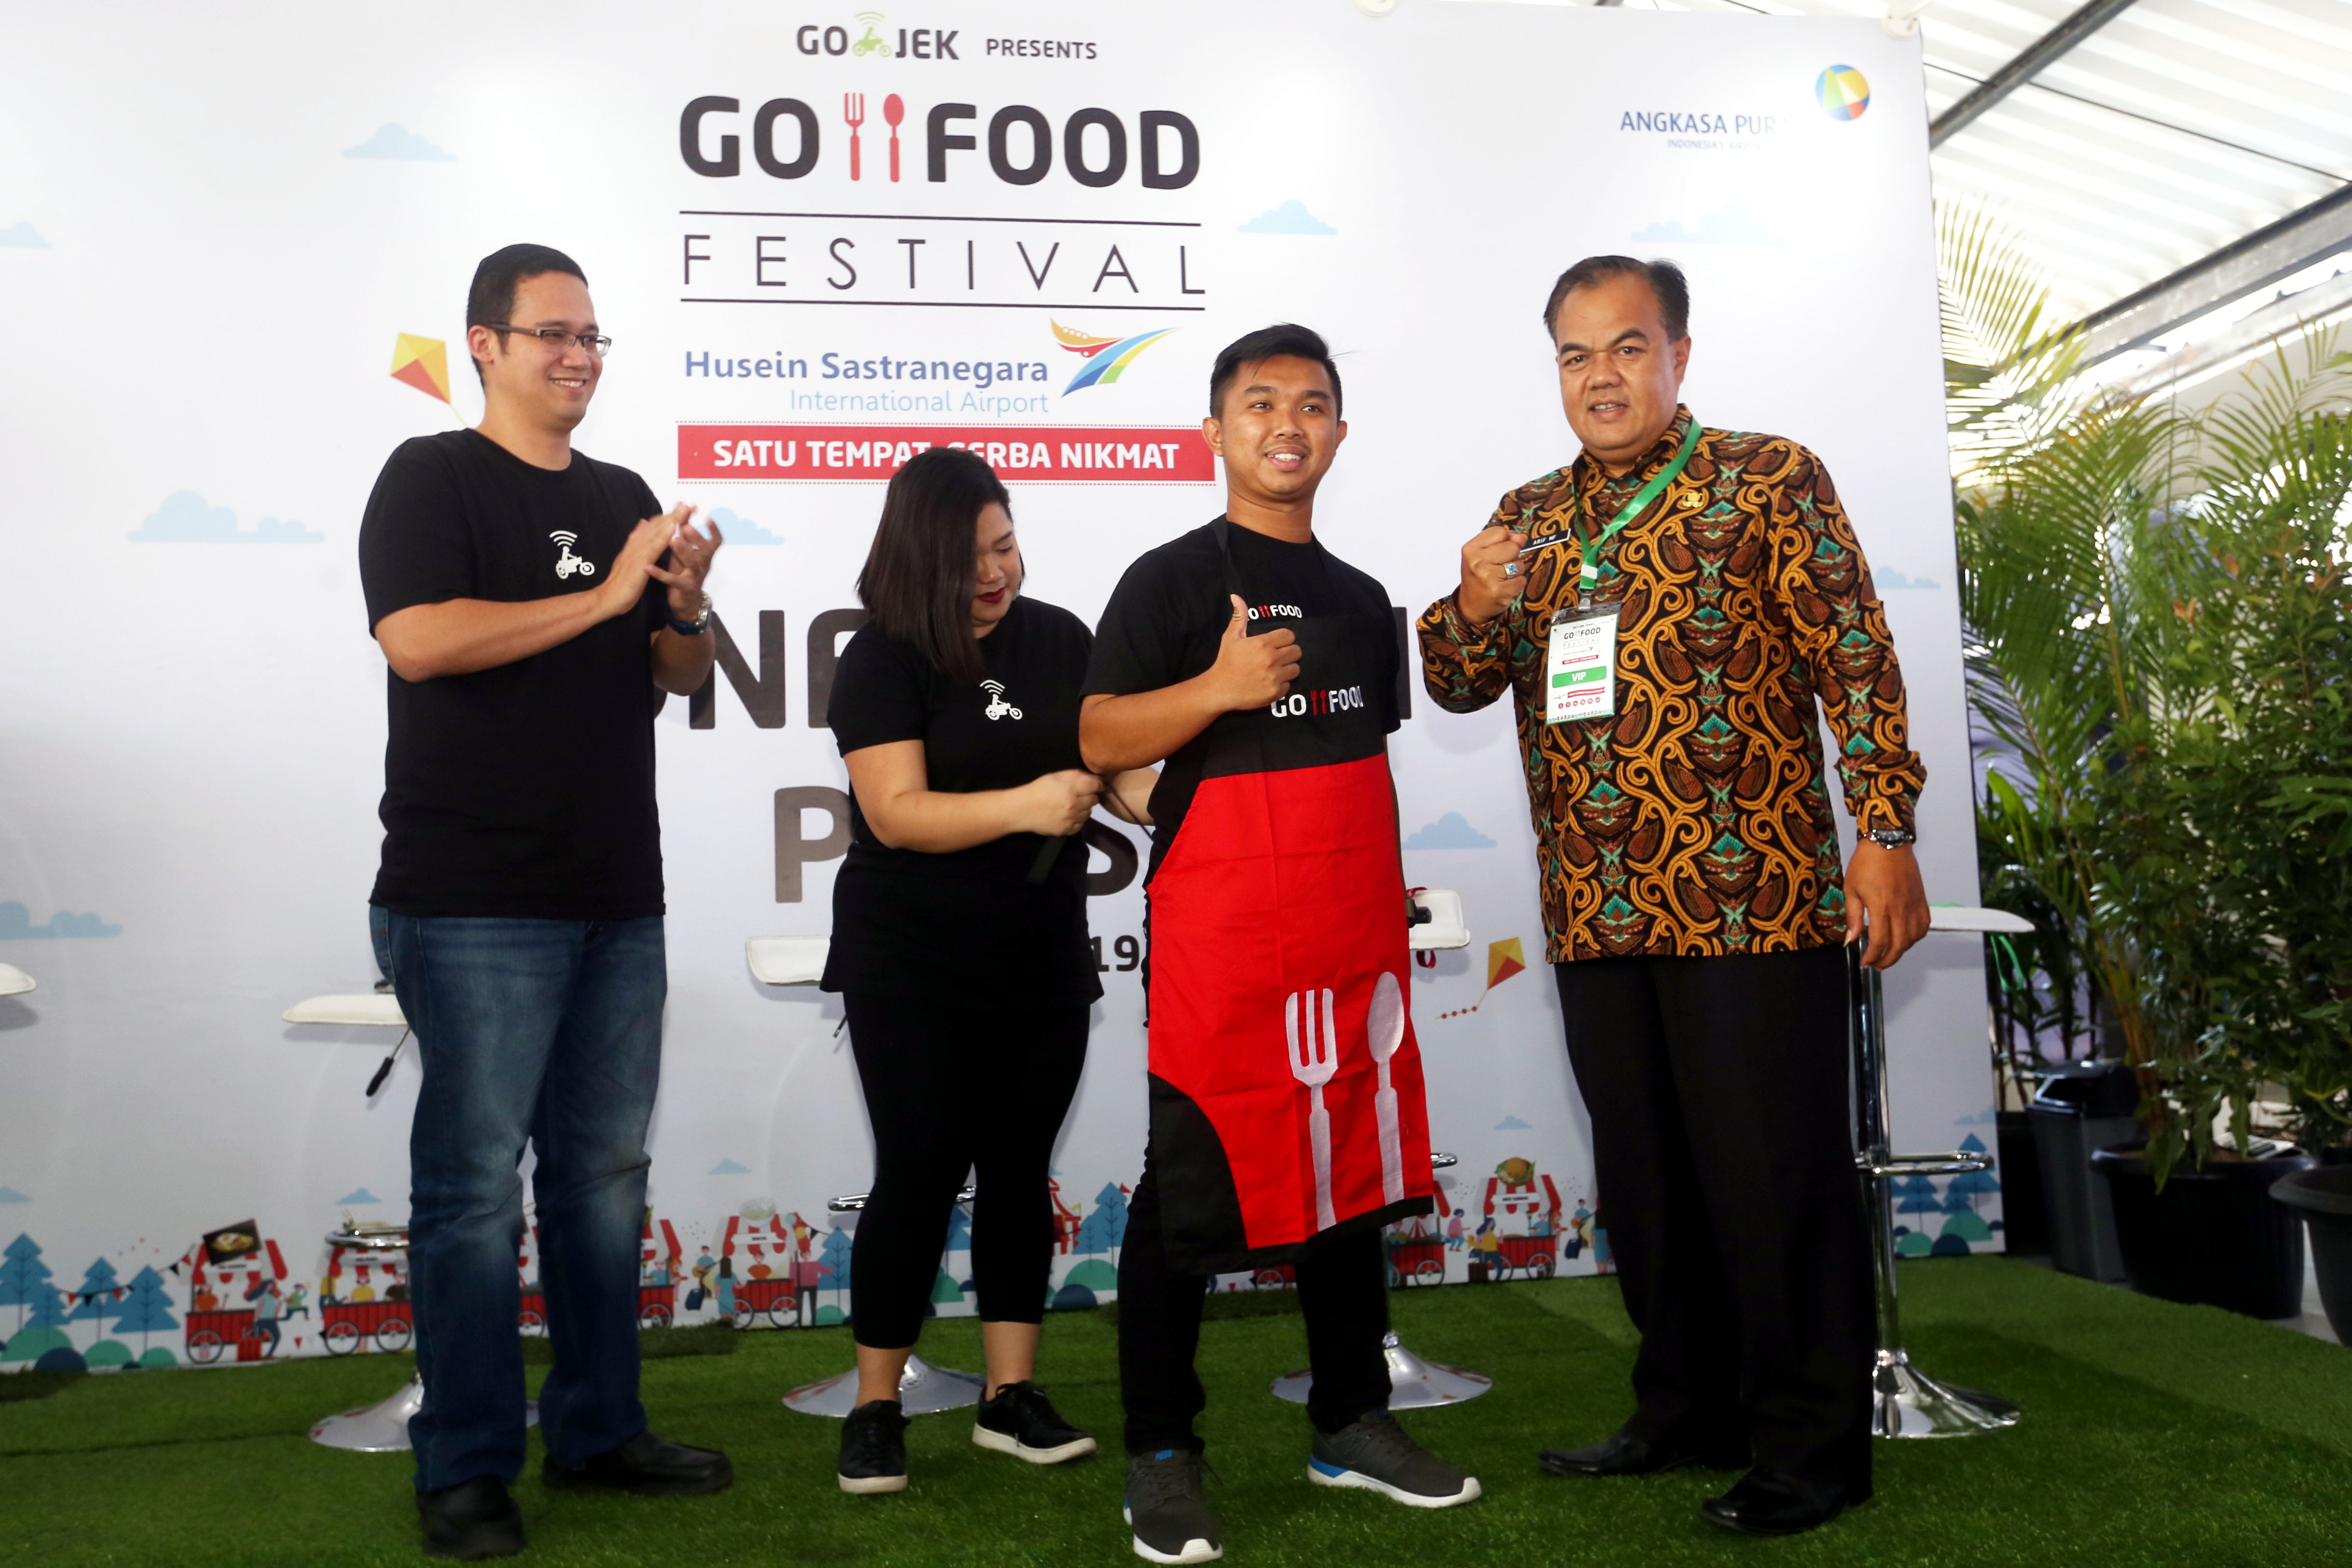 Pembukaan GO-FOOD Festival di bandara Husein Sastranegara | Foto: GOJEK